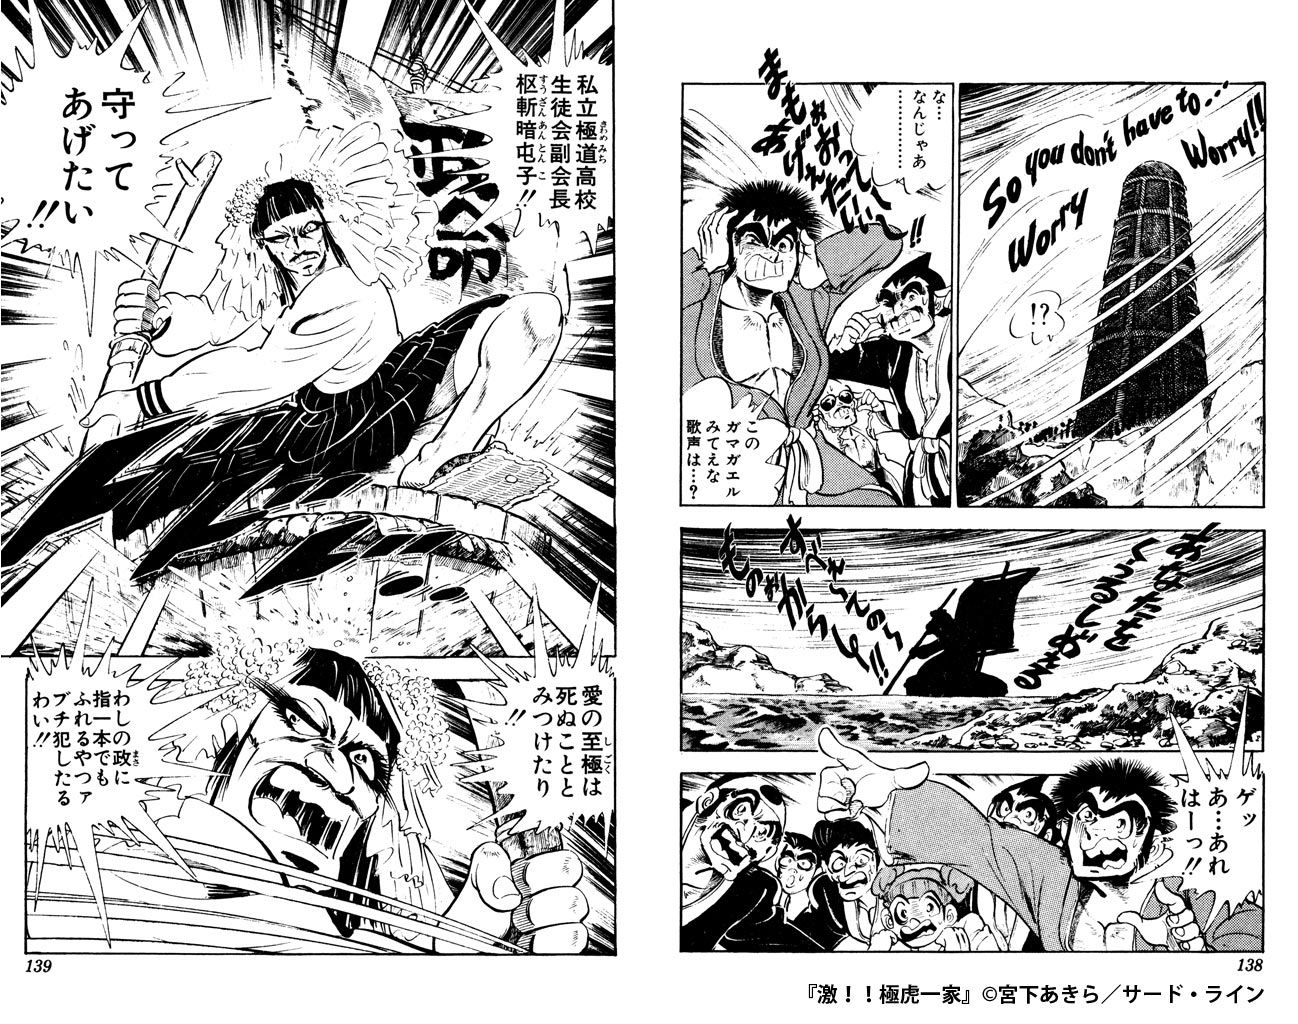 マンガを掘りつくせ Manga Diggin Vol 5 5 激 極虎一家 Part2 ソニーの電子書籍ストア Reader Store